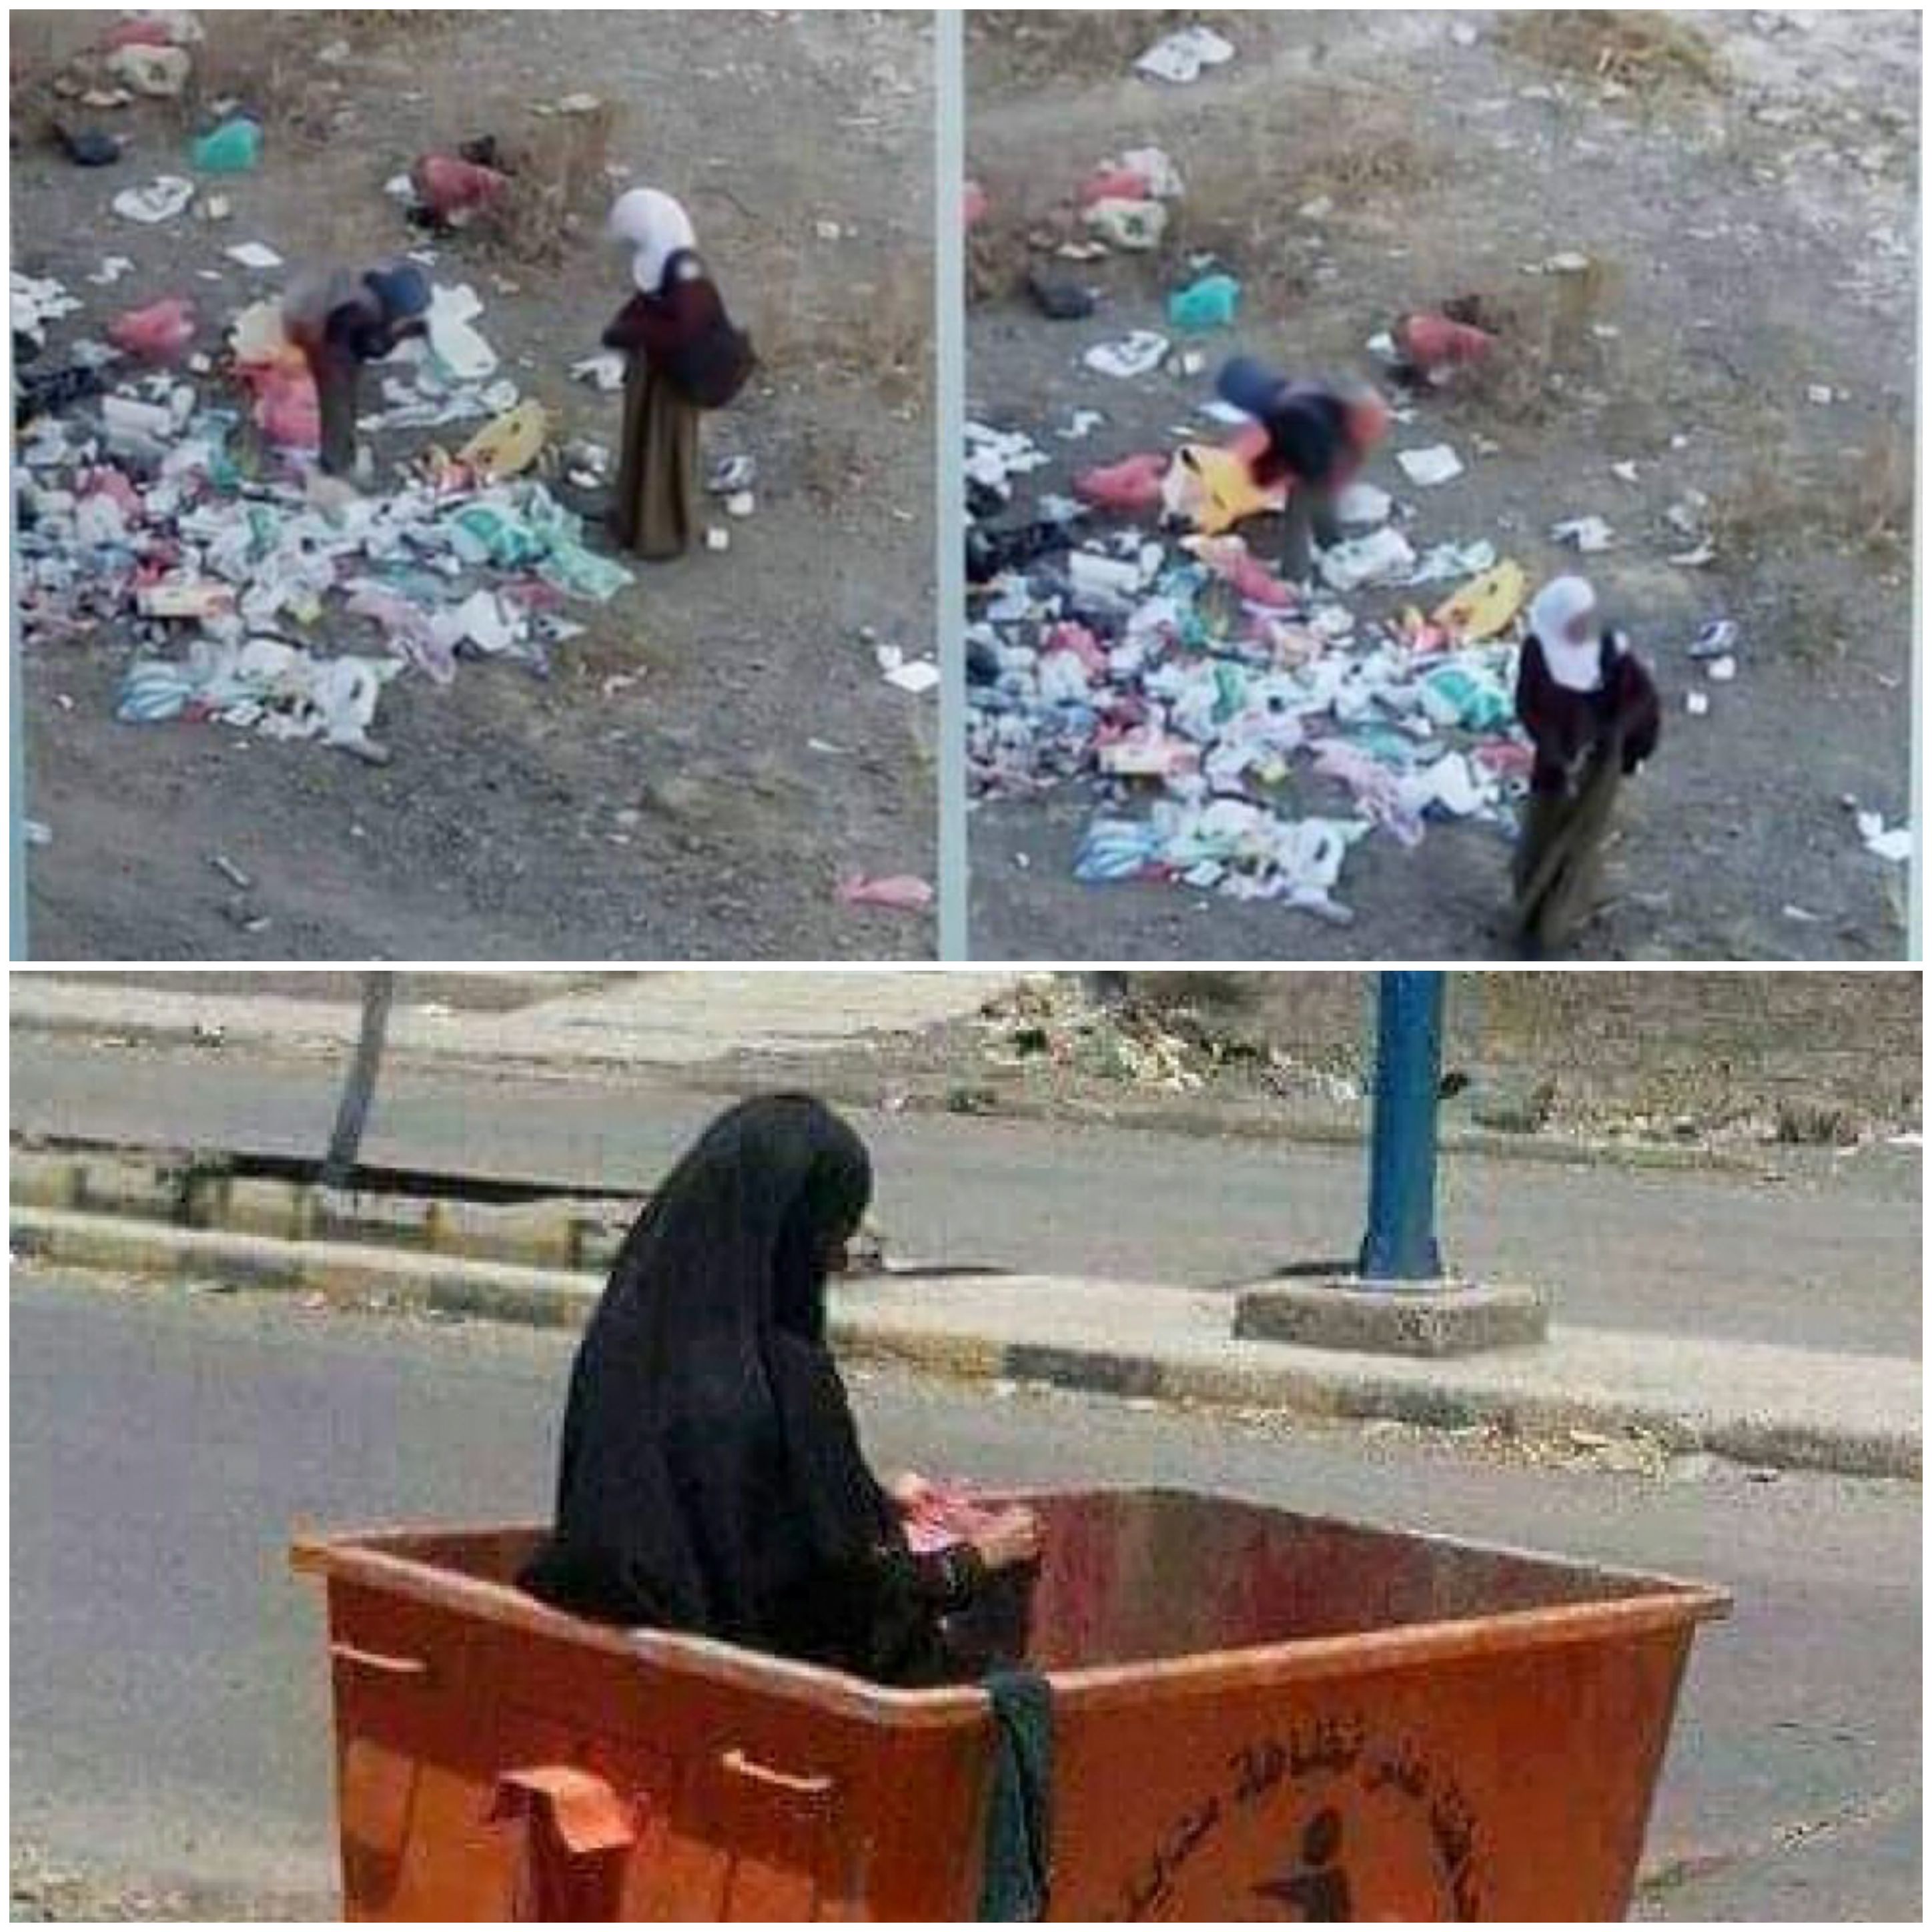 شاهد .. نساء وأطفال يبحثون عن الطعام في القمامة والجوع يسكن كل بيت و دعوات لثورة جياع 